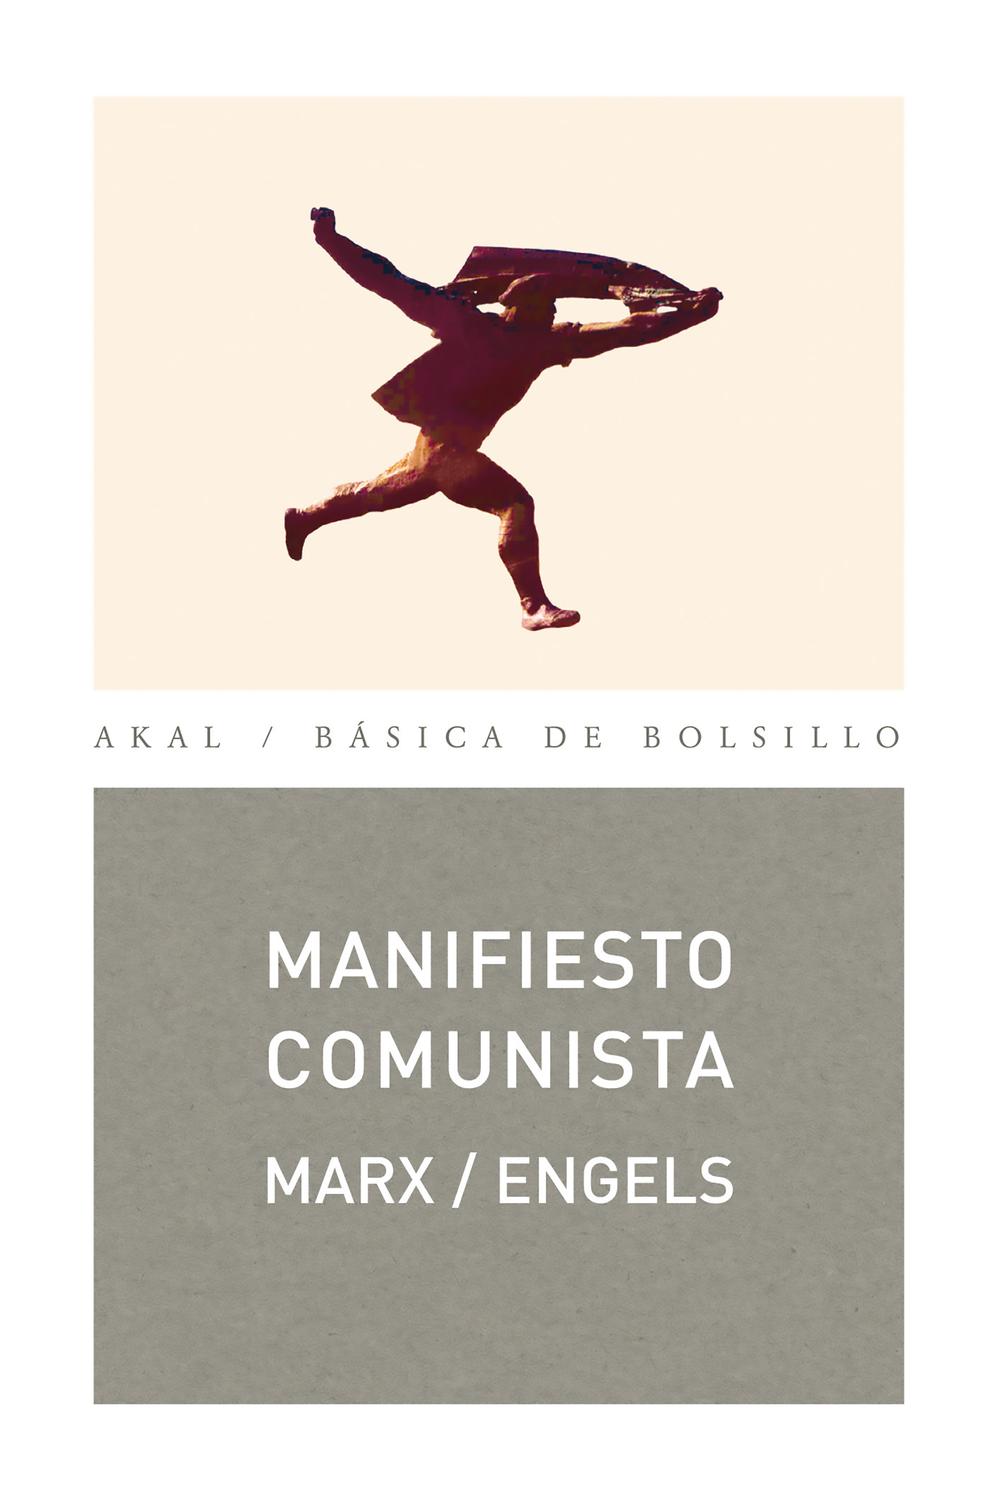 Manifiesto comunista - Karl Marx, Friedrich Engels, Ediciones en lenguas extranjeras de Moscú